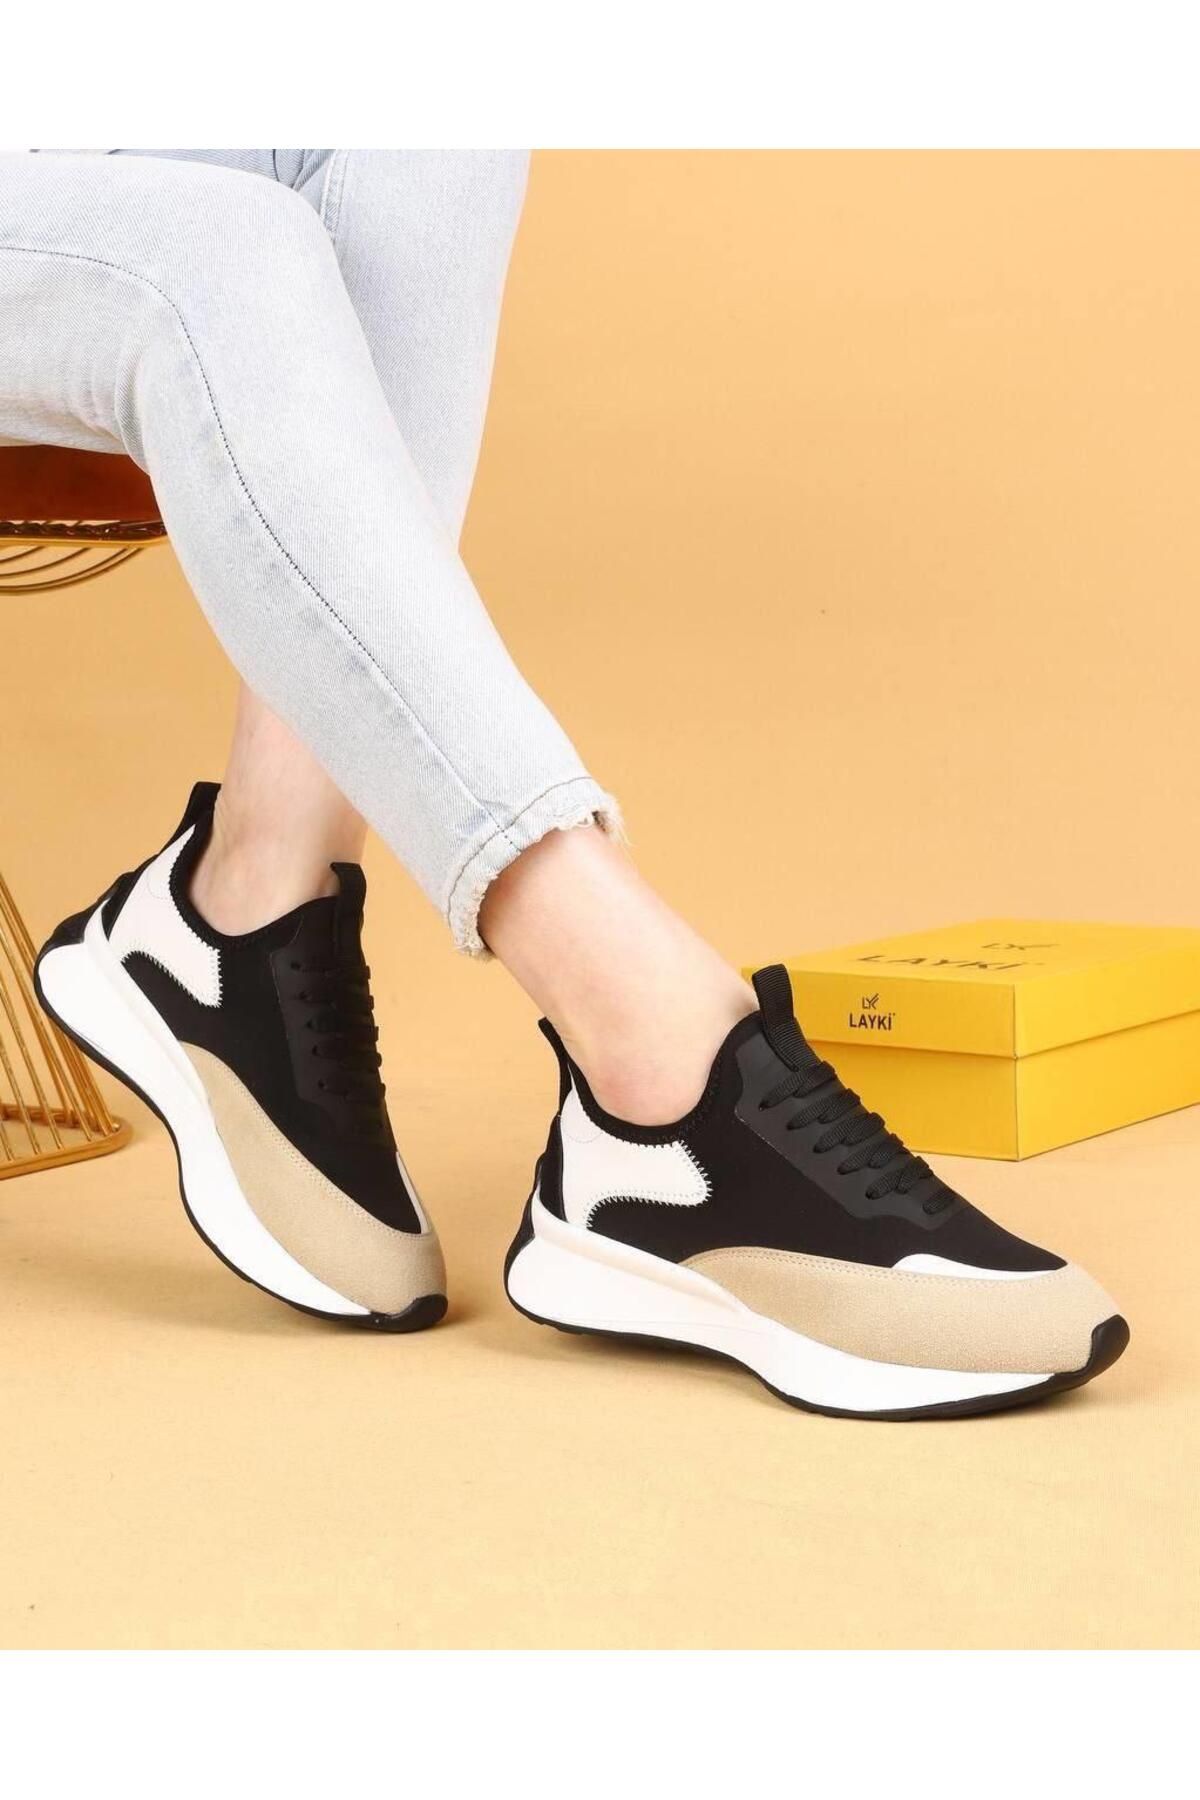 layki Dracia Siyah&Bej Renkli Lüx Süet Kadın Günlük Yürüyüş Ayakkabısı